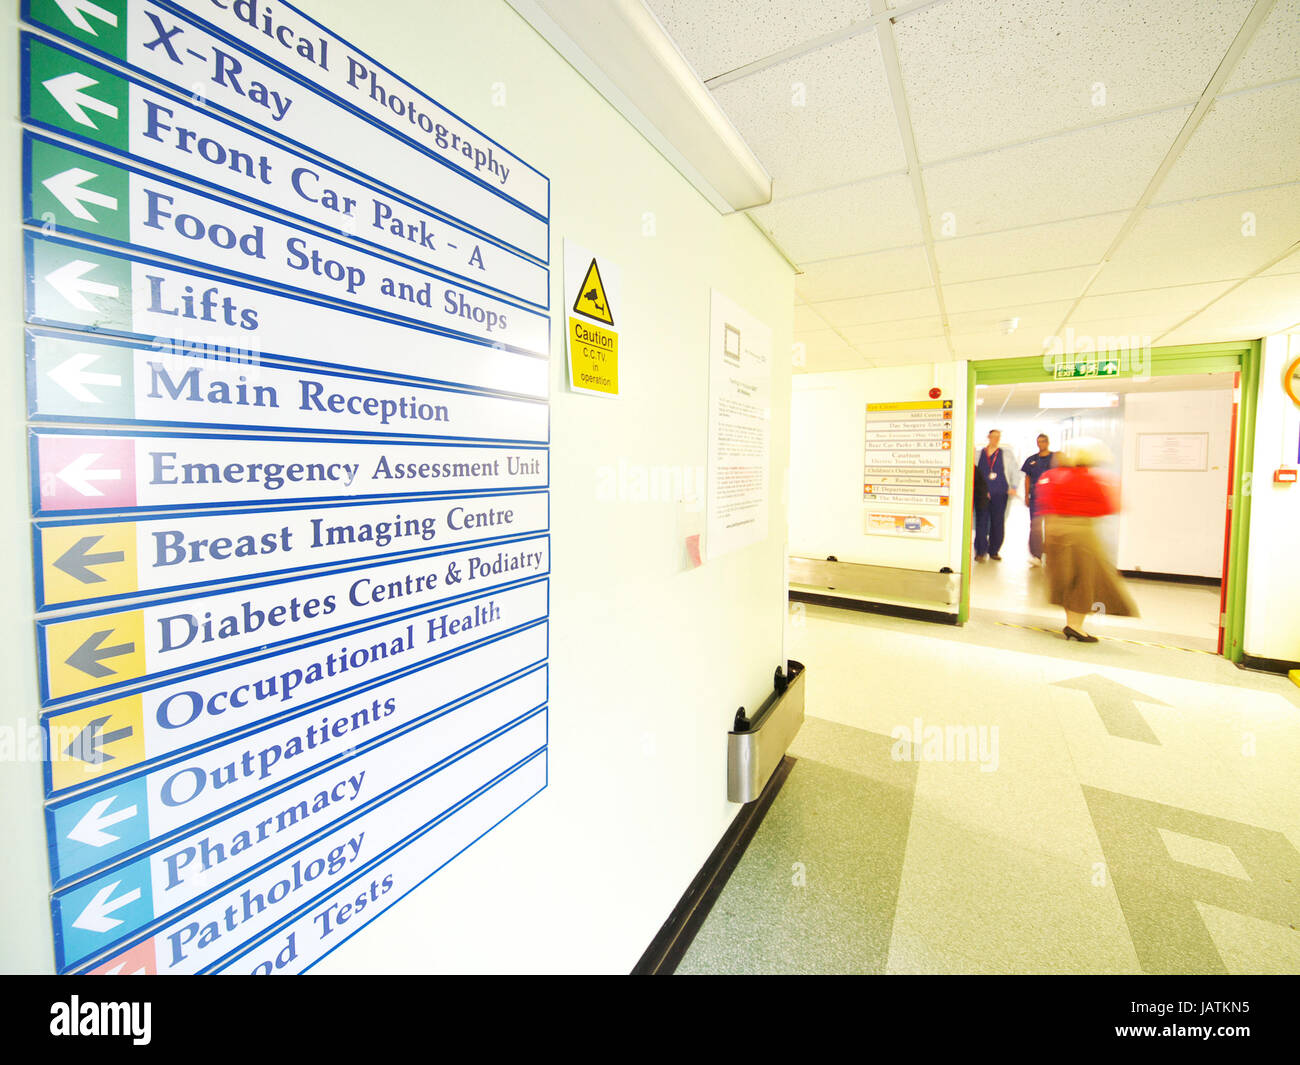 Señalización en un hospital del Reino Unido que muestra salas de tratamiento y pacientes ambulatorios con movimiento difuso de personas en el fondo Foto de stock